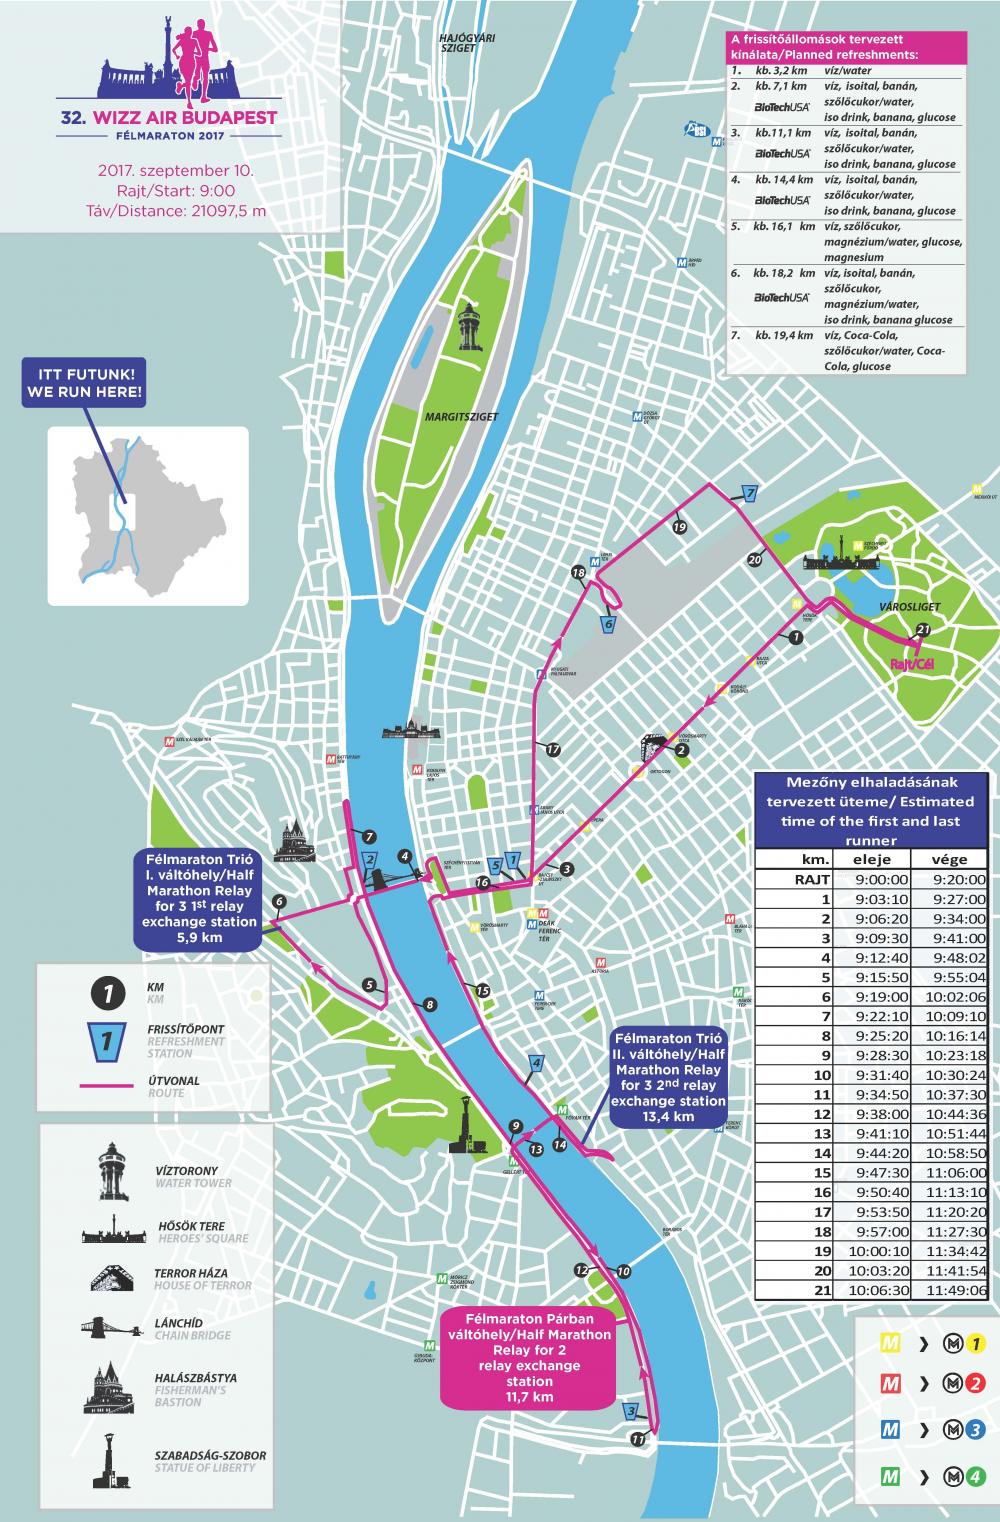 budapest virtuális térkép 32. Wizz Air Budapest Félmaraton térkép   Futanet.hu budapest virtuális térkép